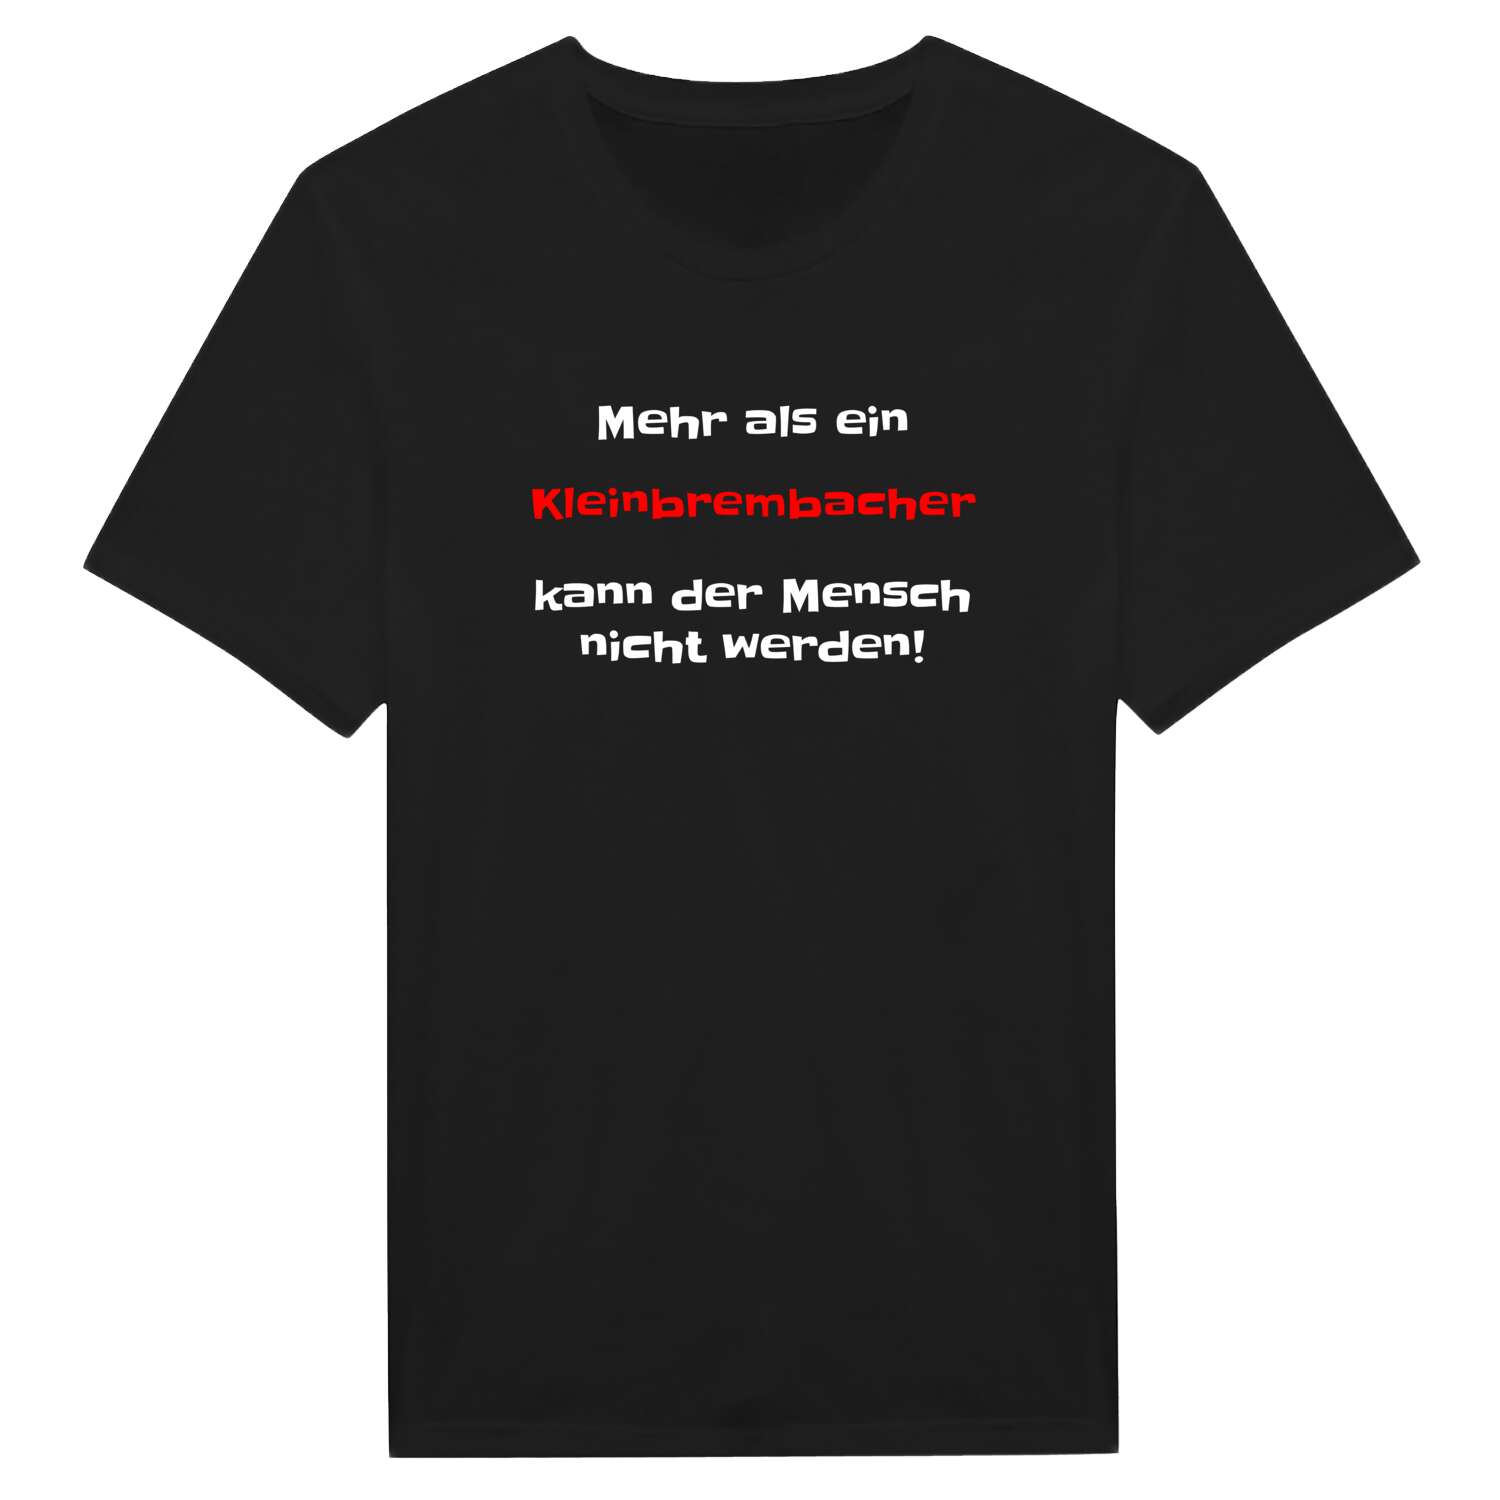 Kleinbrembach T-Shirt »Mehr als ein«